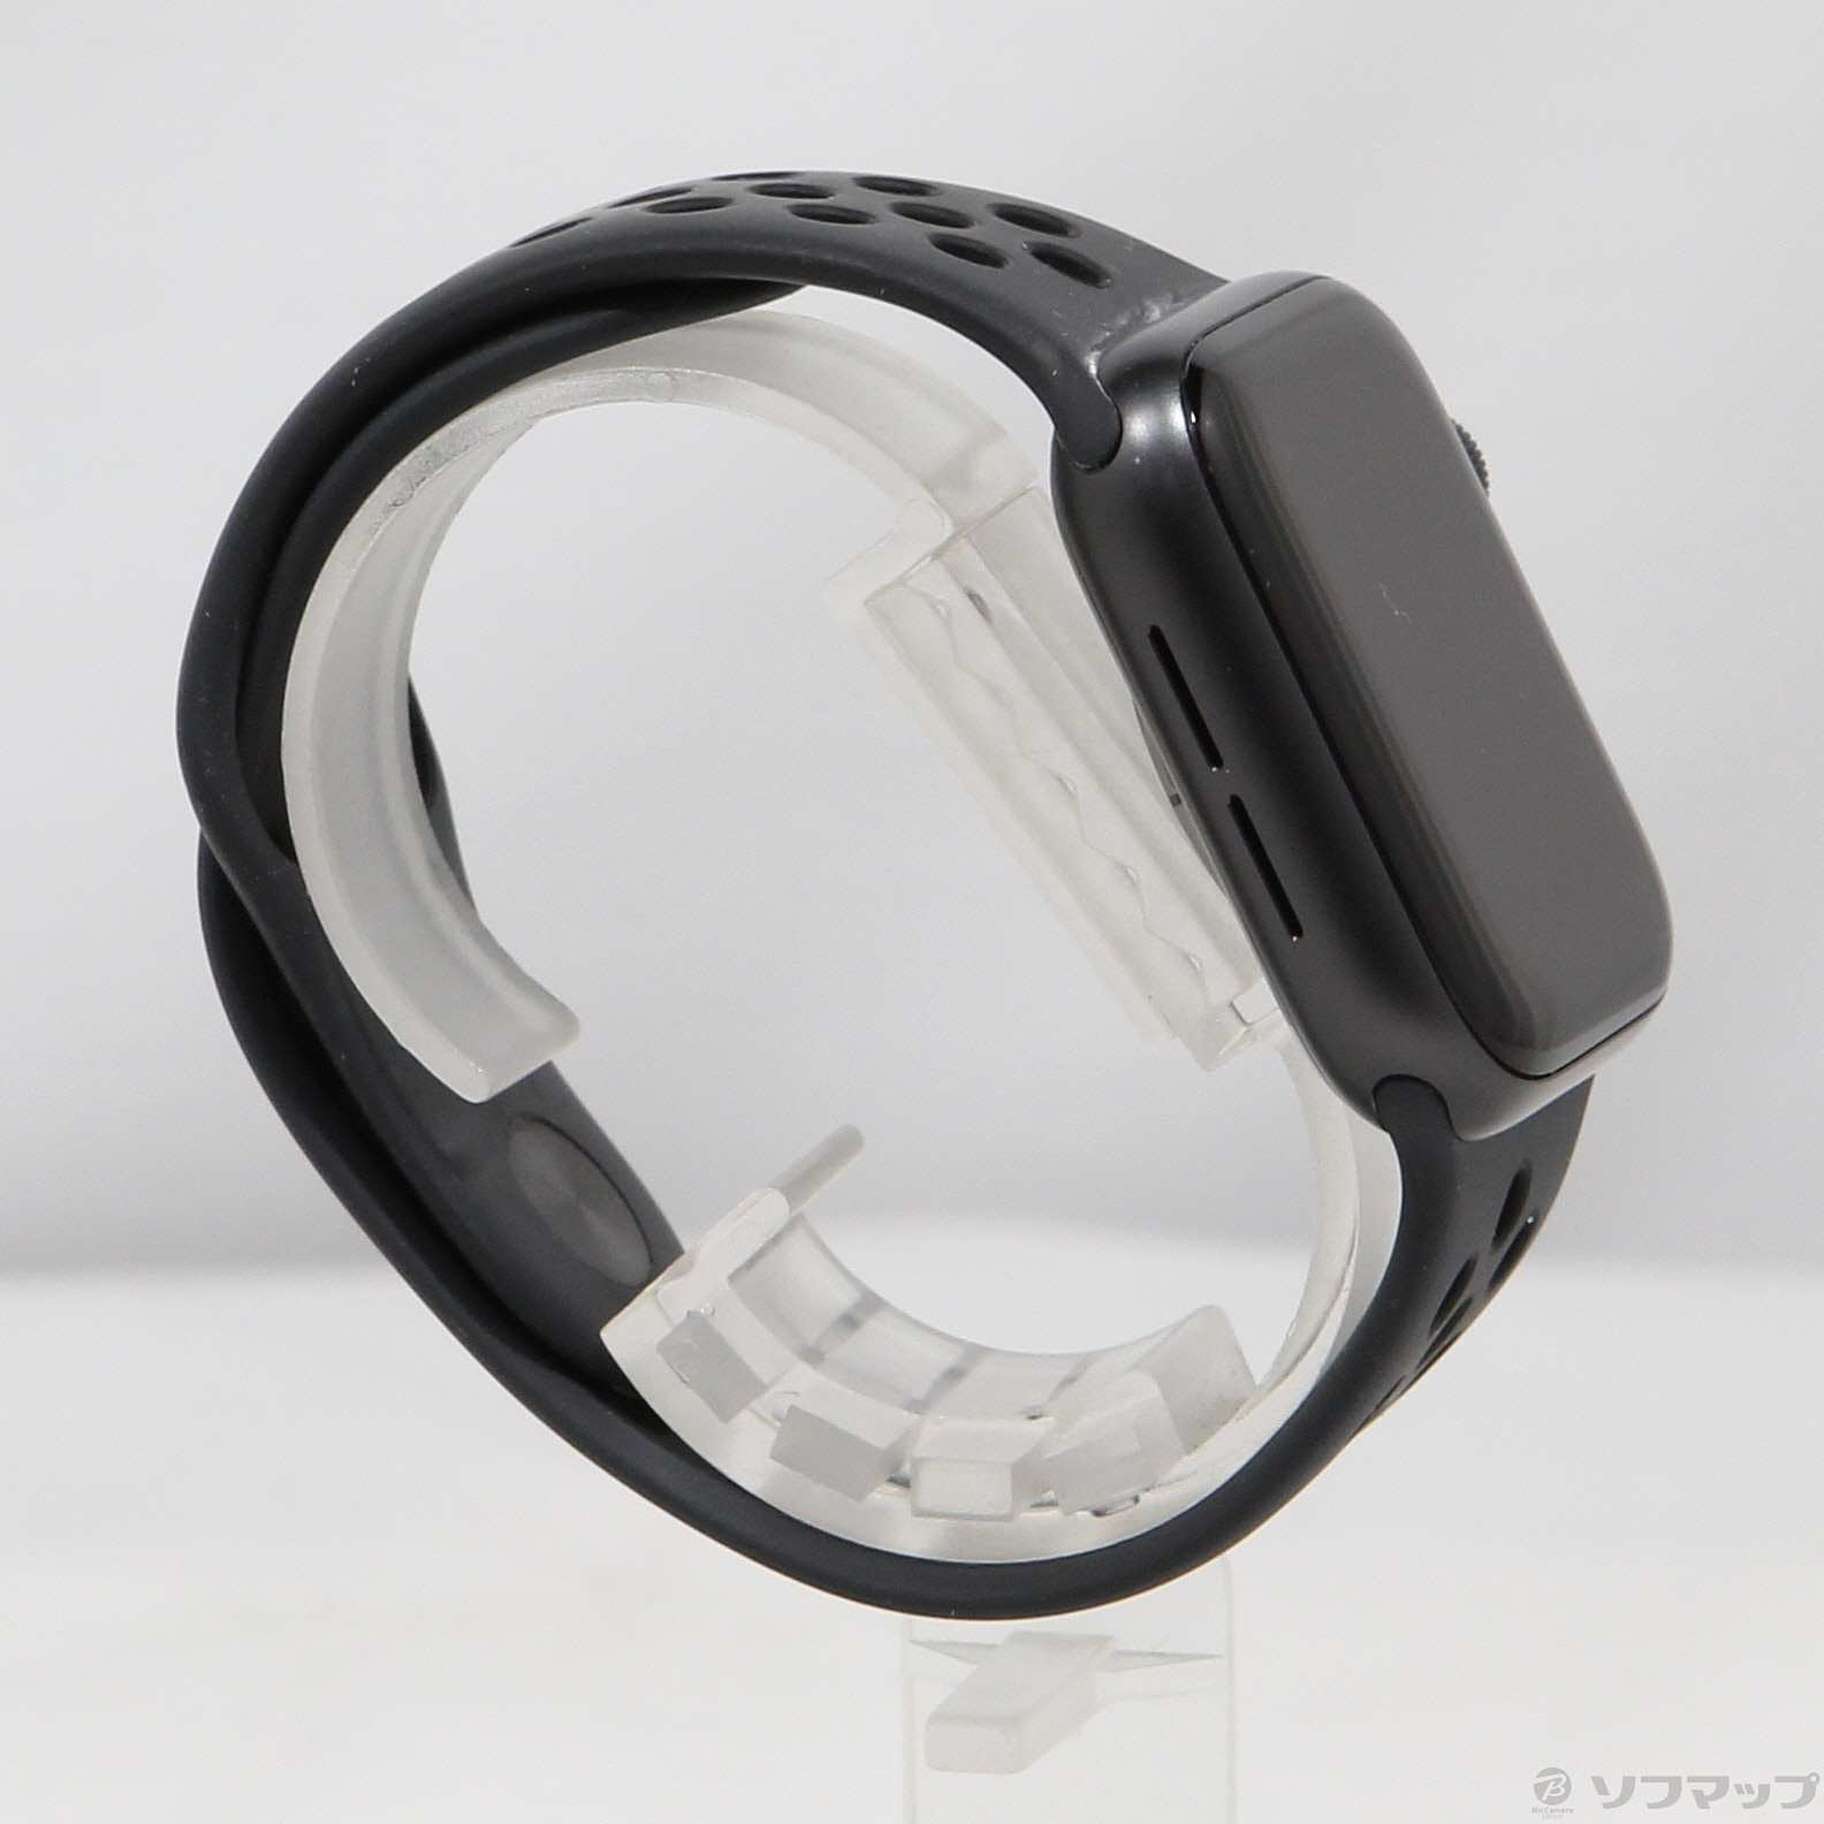 中古品〕 Apple Watch Series 5 Nike GPS 40mm スペースグレイ 